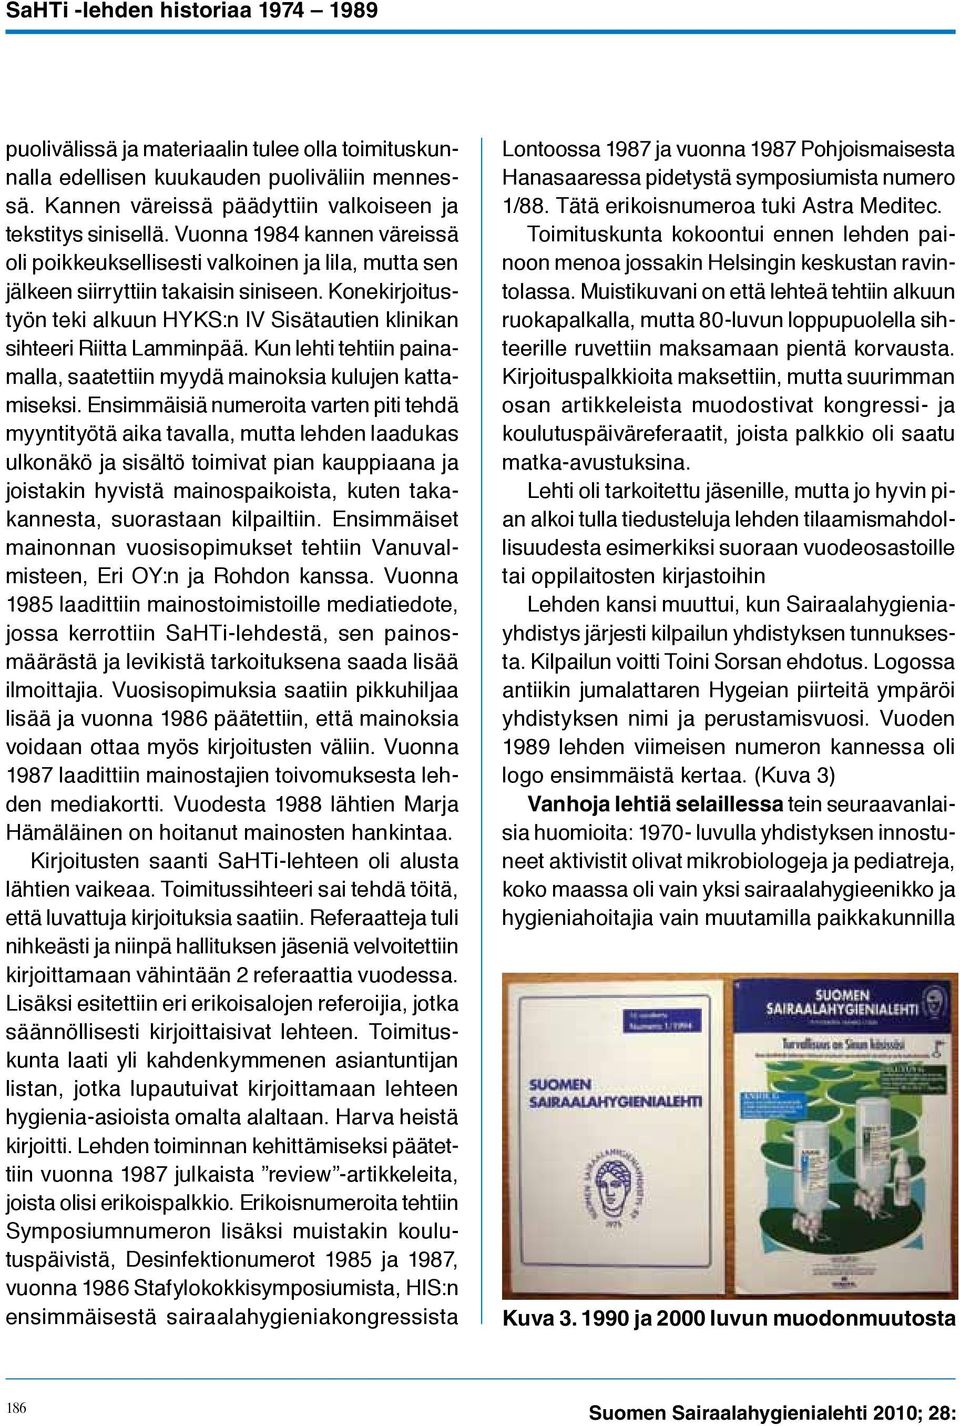 Konekirjoitustyön teki alkuun HYKS:n IV Sisätautien klinikan sihteeri Riitta Lamminpää. Kun lehti tehtiin painamalla, saatettiin myydä mainoksia kulujen kattamiseksi.